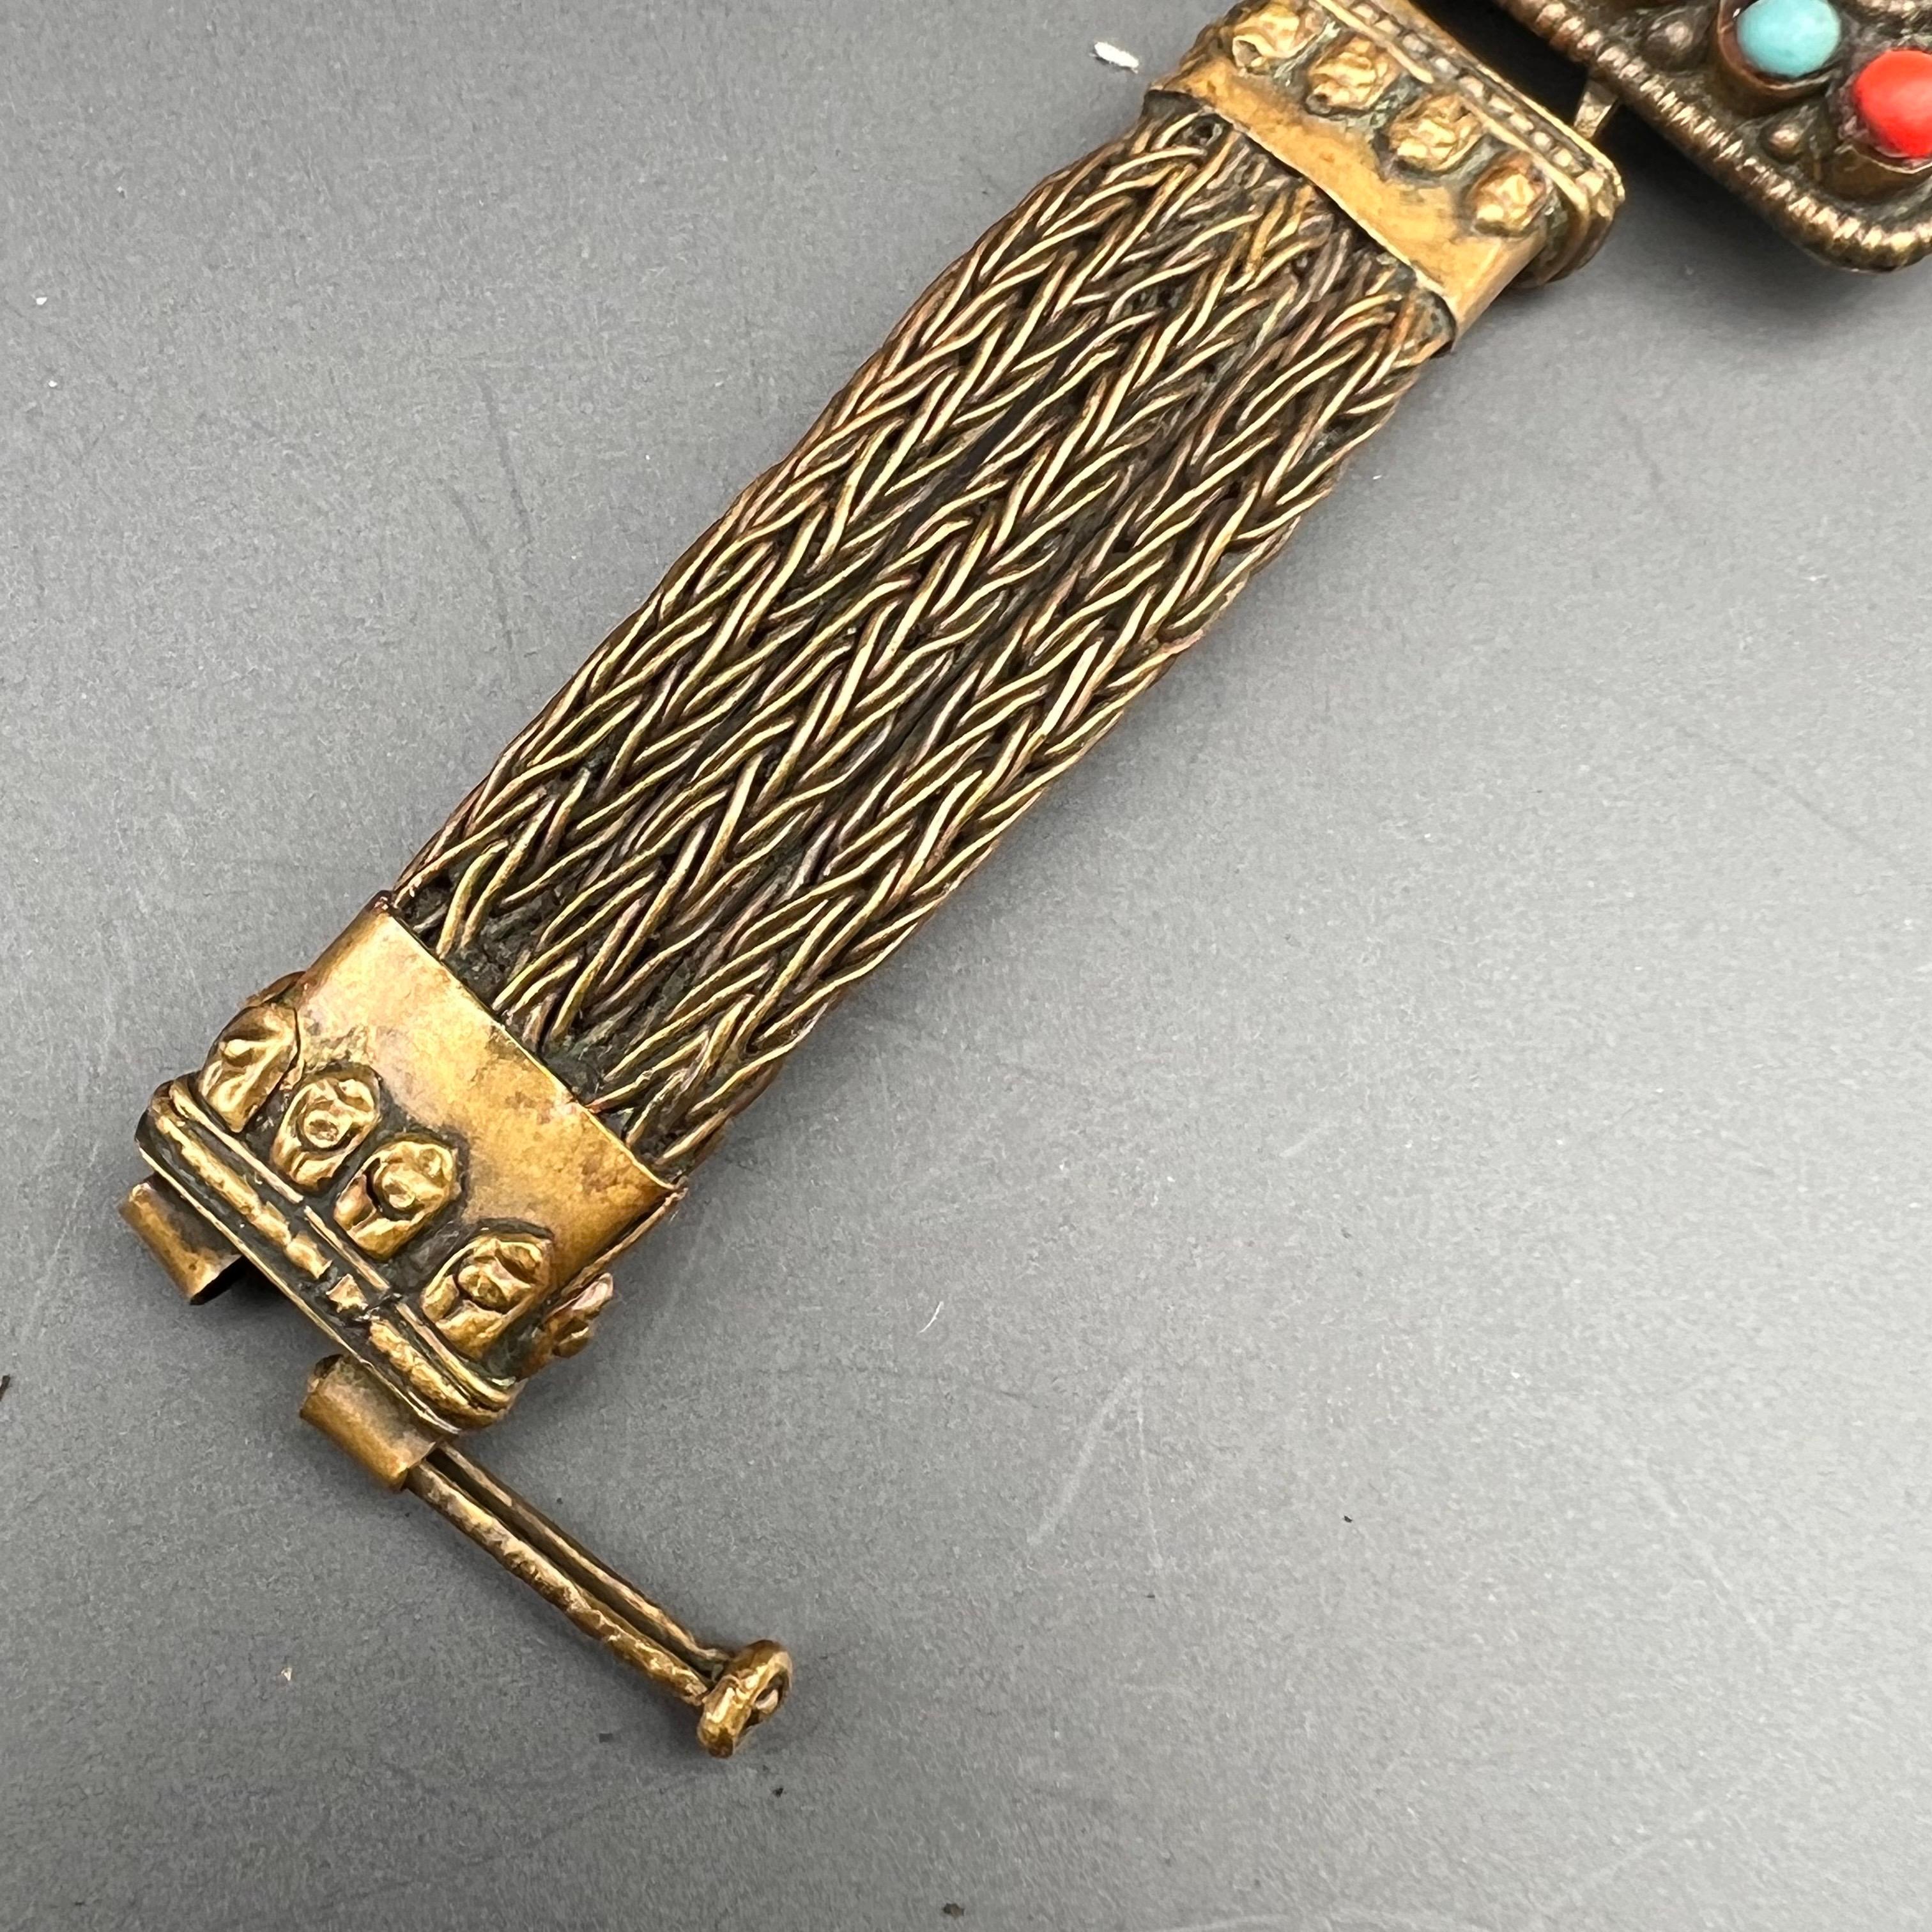 Handmade Tibet Bracelet with Carved Ganesha For Sale 2